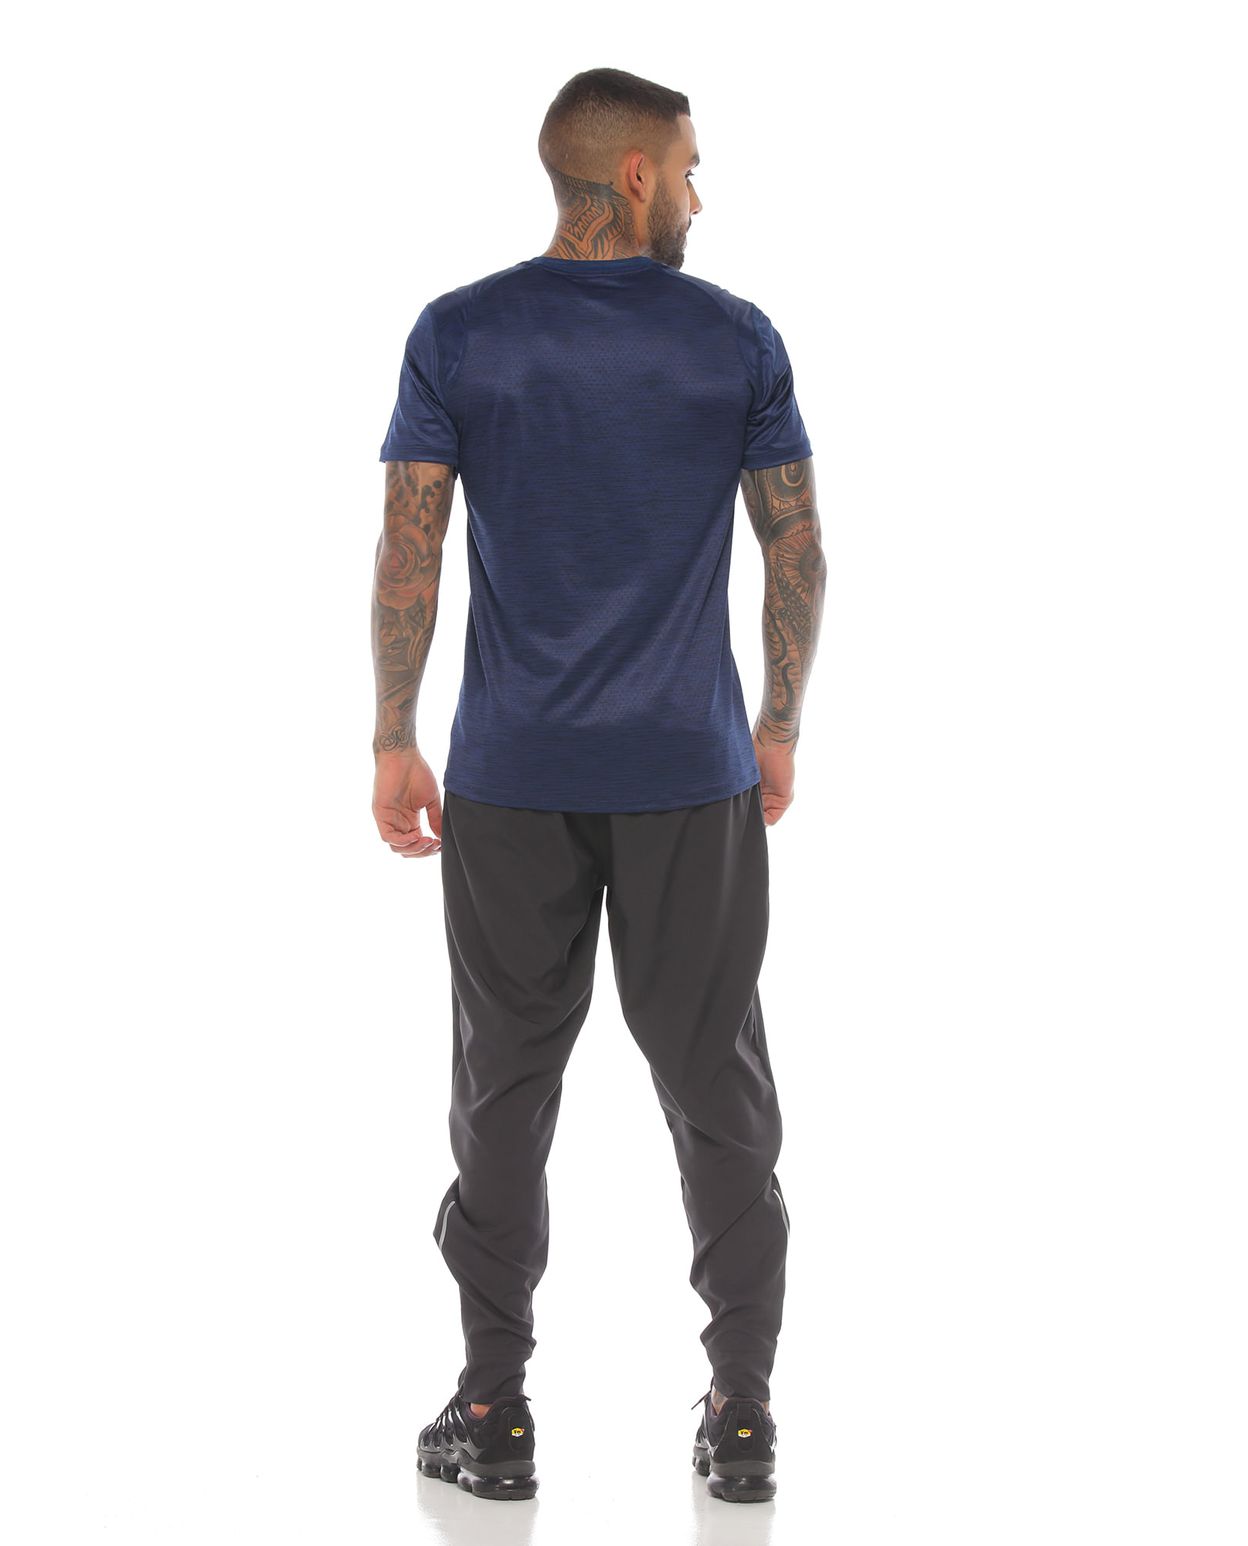 modelo con camiseta azul oscuro manga corta y pantalon deportivo gris para hombre cuerpo completo parte trasera